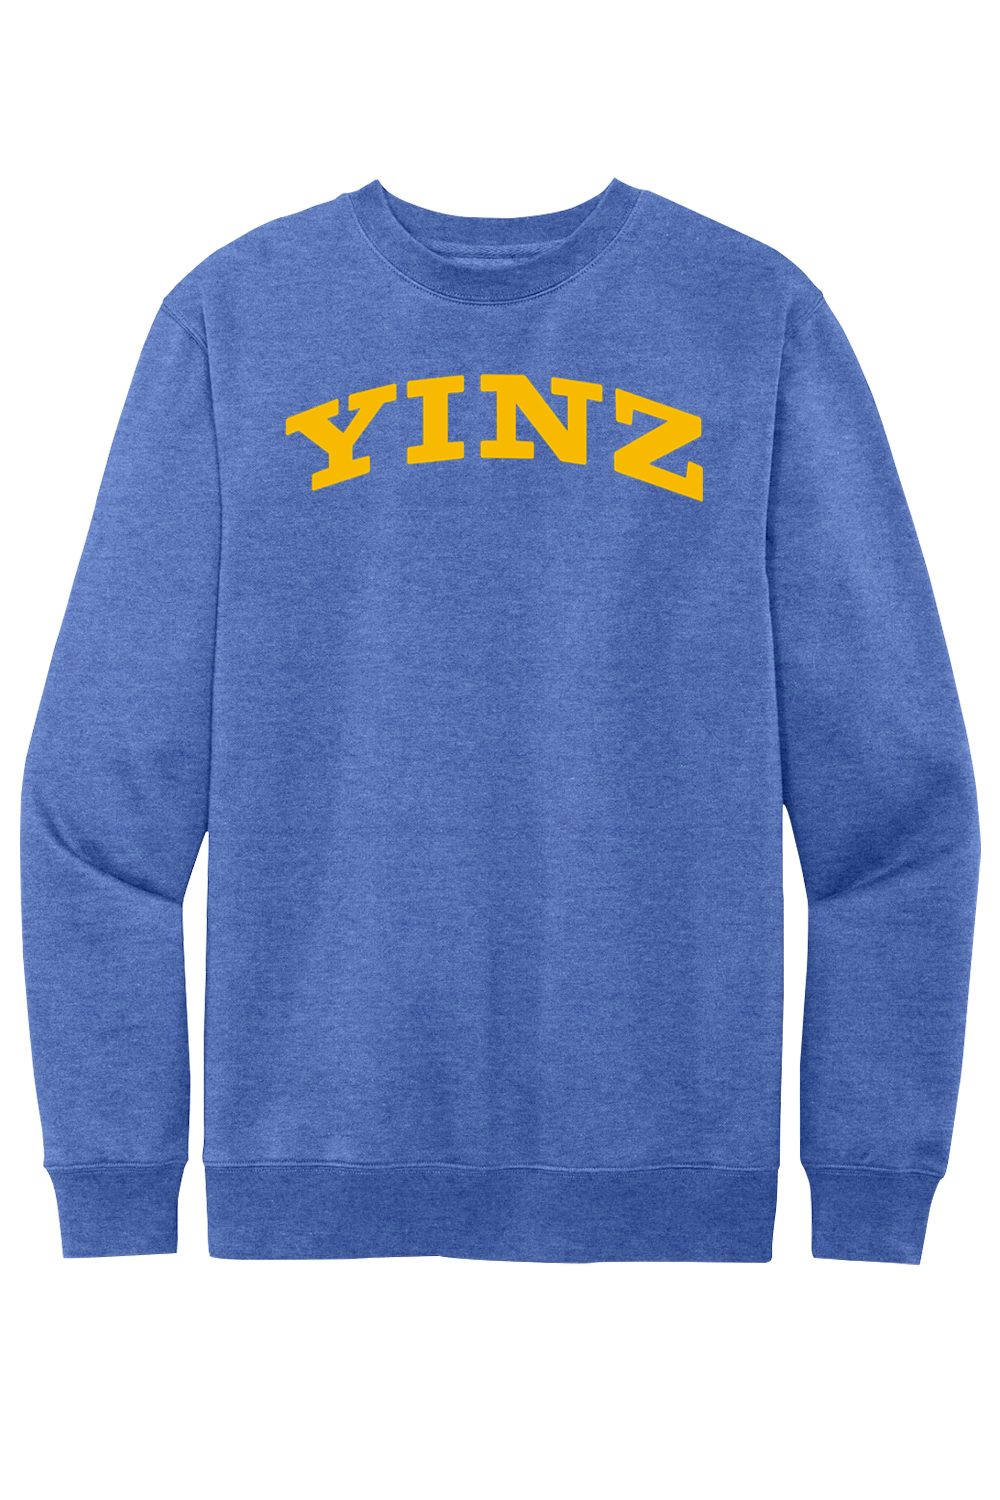 YINZ - Collegiate - Fleece Crewneck Sweatshirt - Yinzylvania